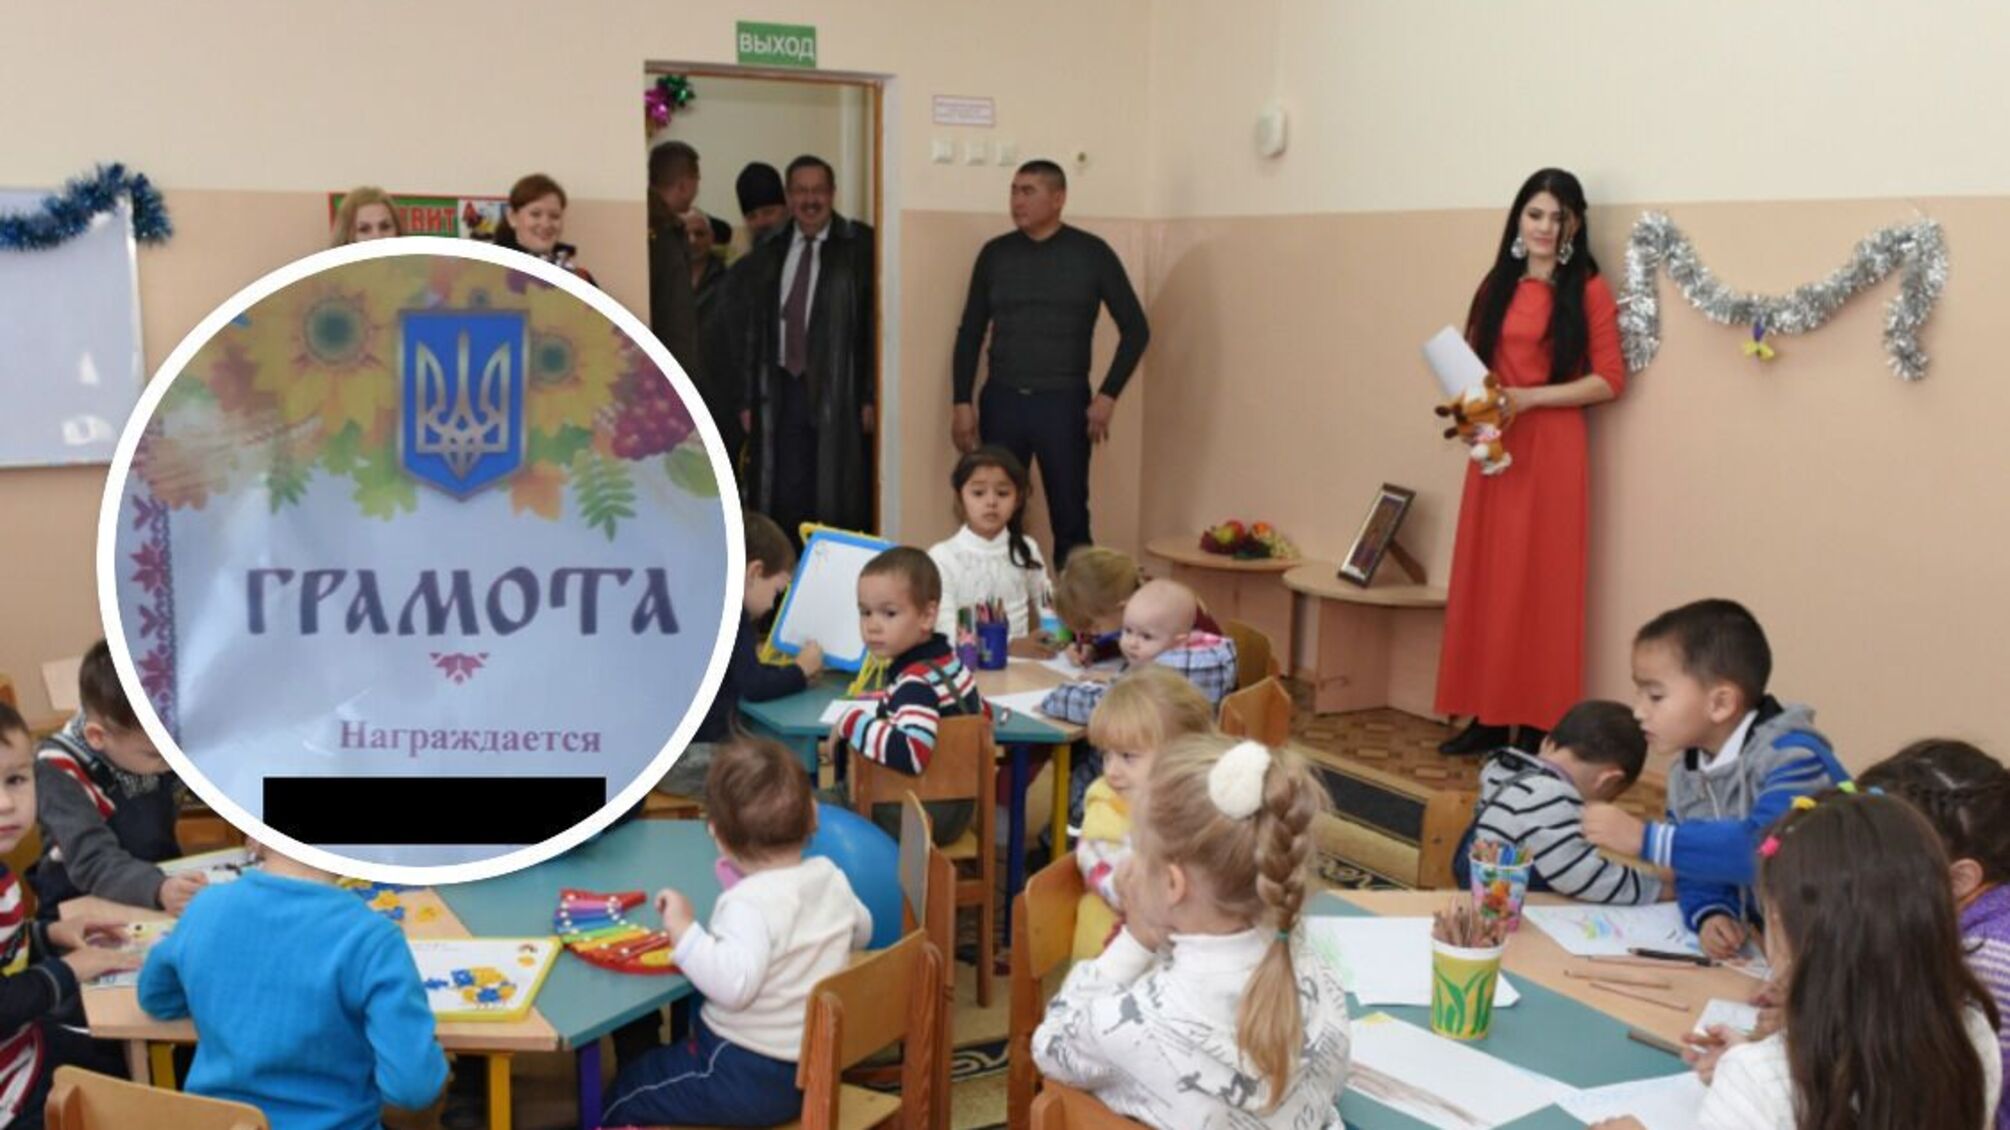 у російському дитячому садочку дітям видали грамоти з гербом україни